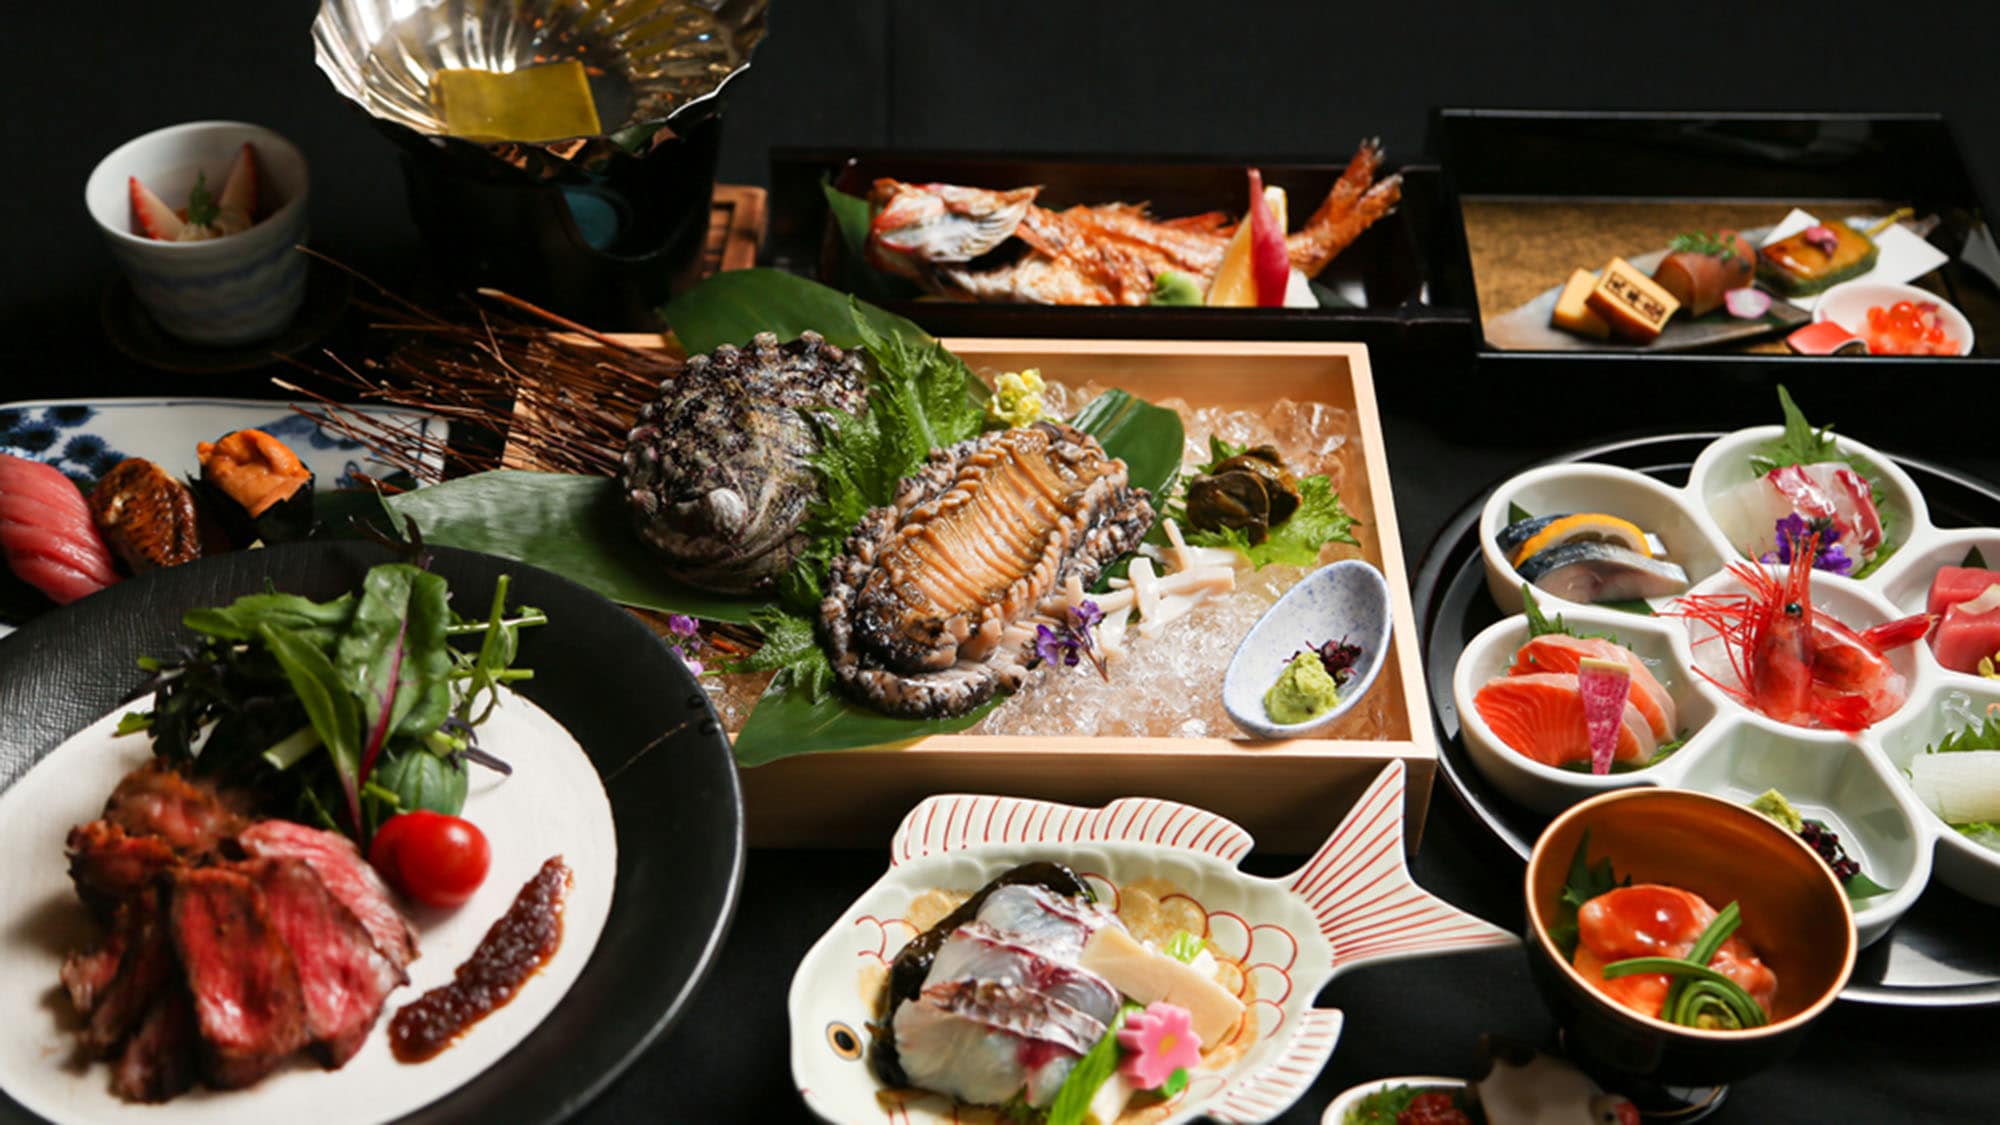 ・ Shikisai Kaiseki: Let's eat delicious Hokuriku kaiseki luxuriously